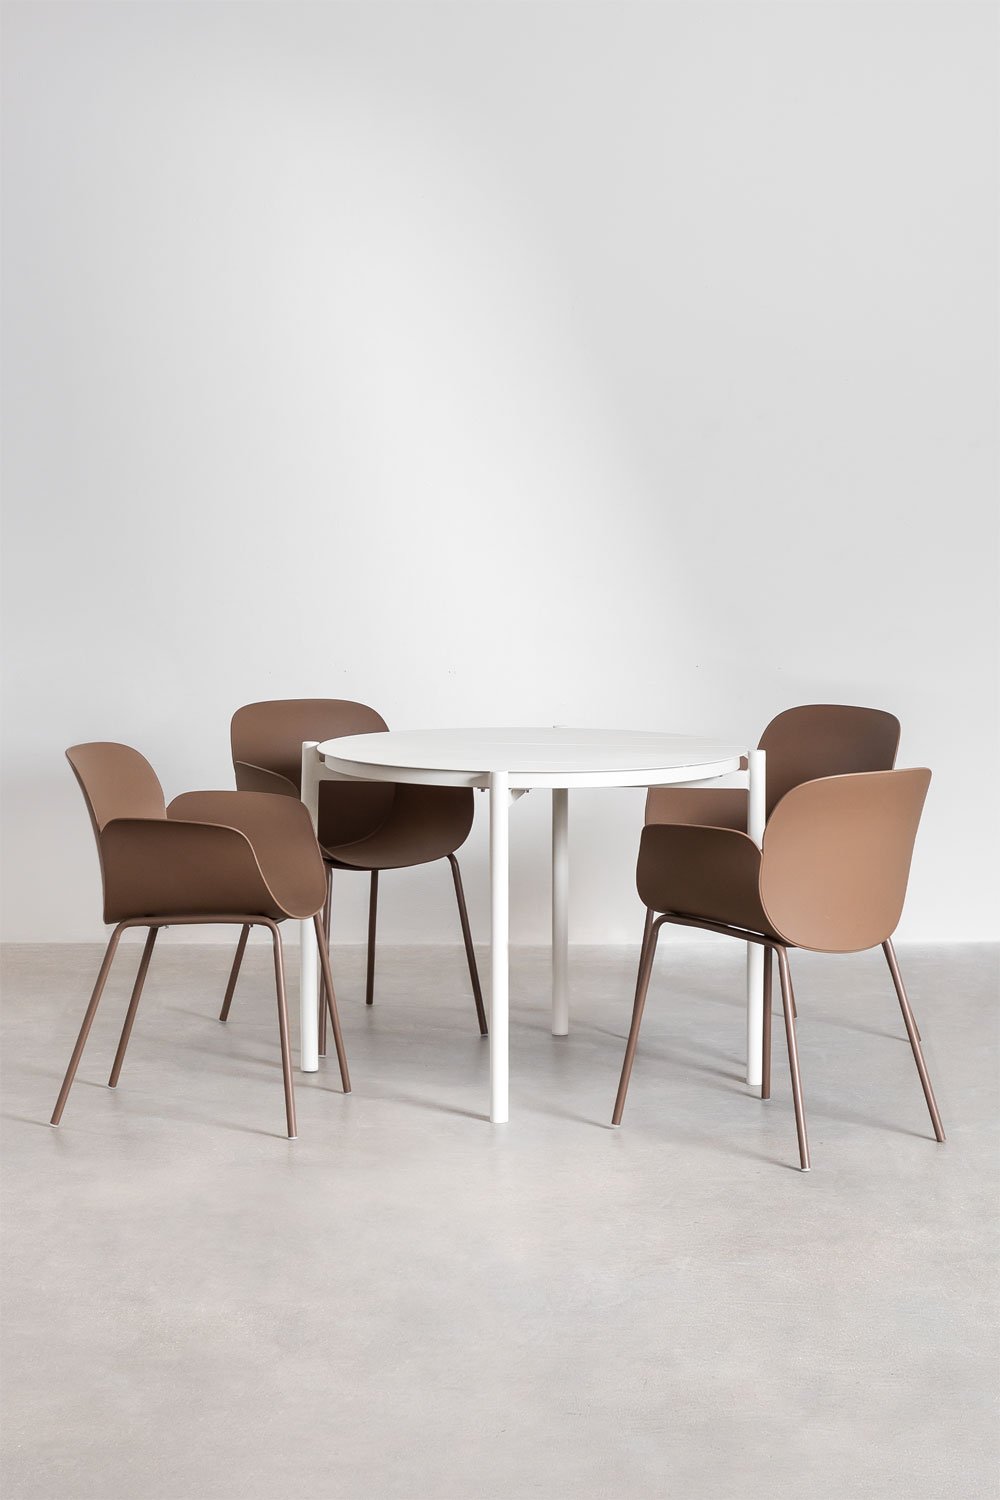 Zestaw okrągłego stołu aluminiowego Elton (średnica 109 cm) i 4 krzesła ogrodowe Lynette, obrazek w galerii 1